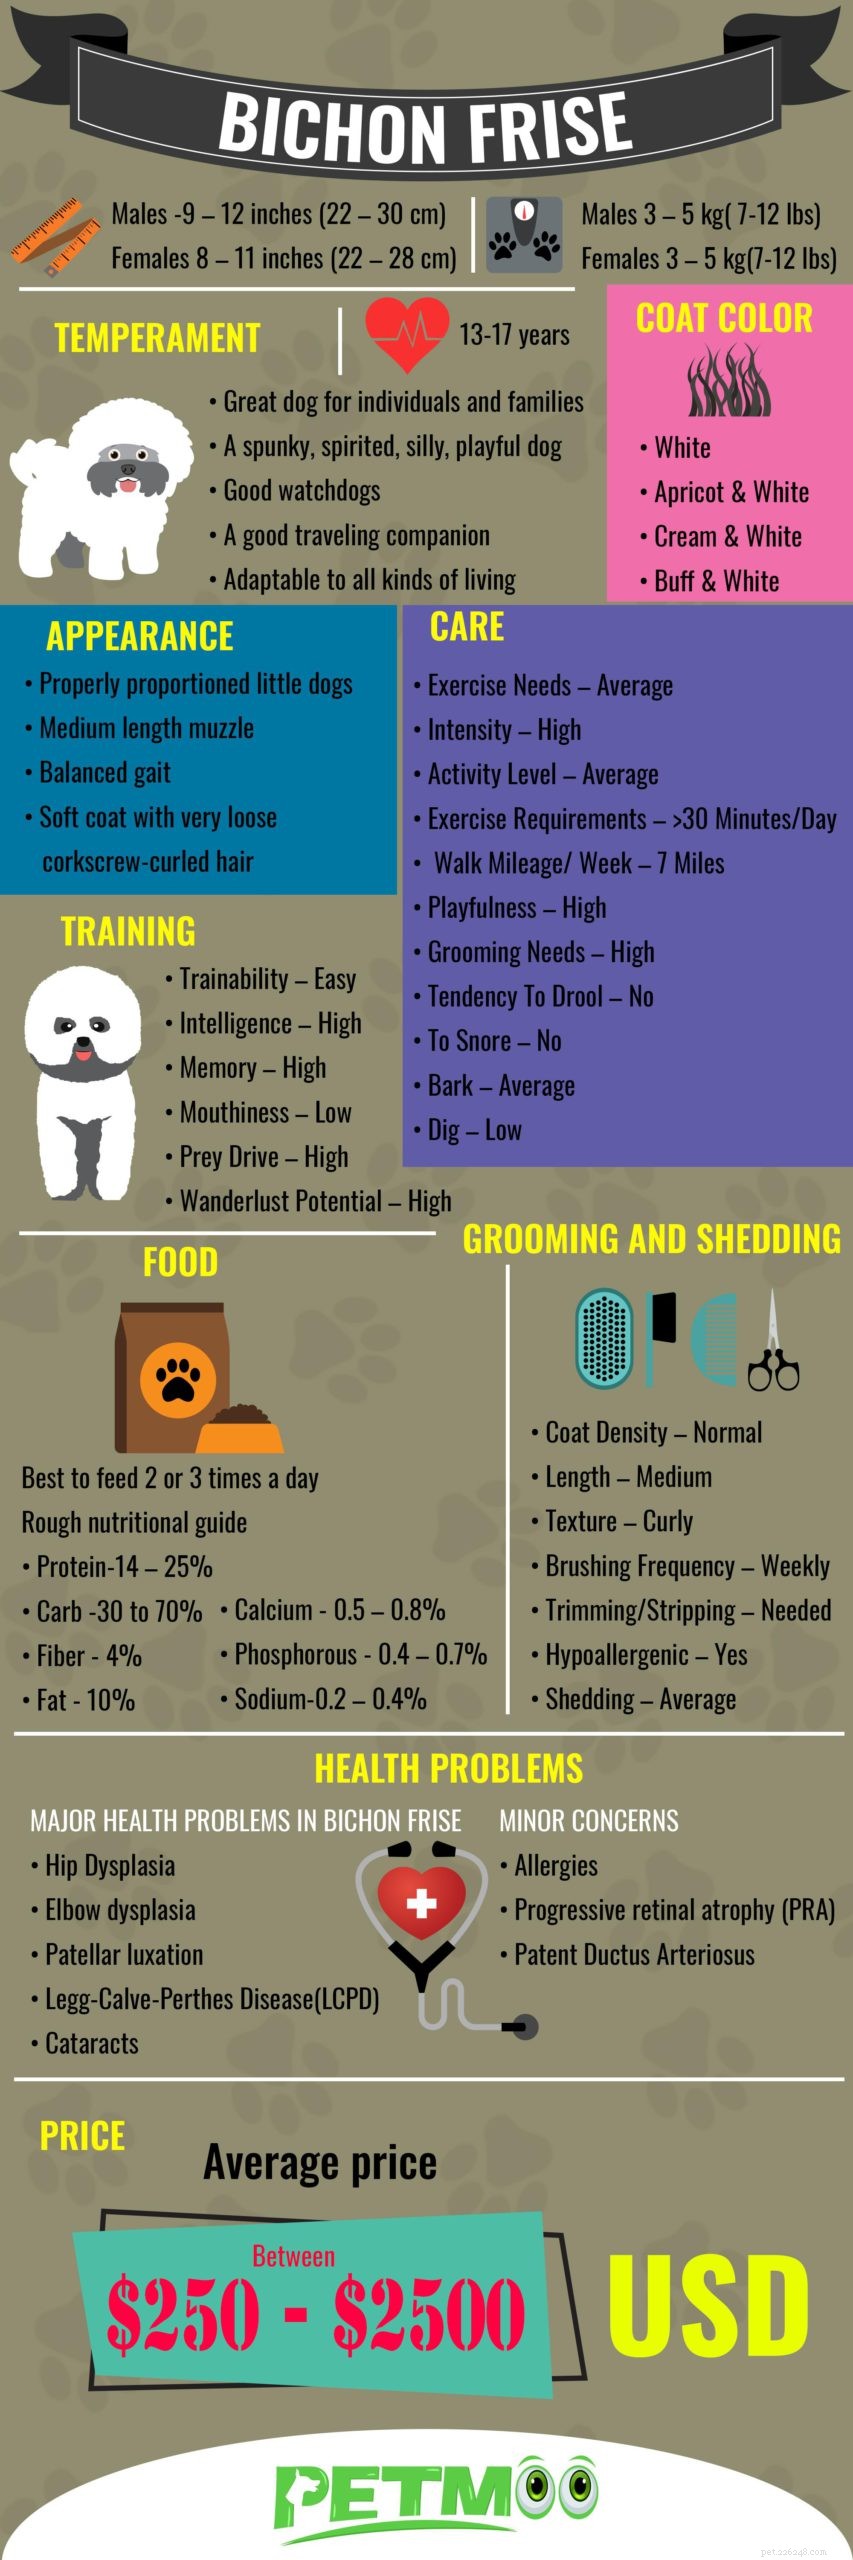 Bichon frisé – Informations complètes sur la race de chien